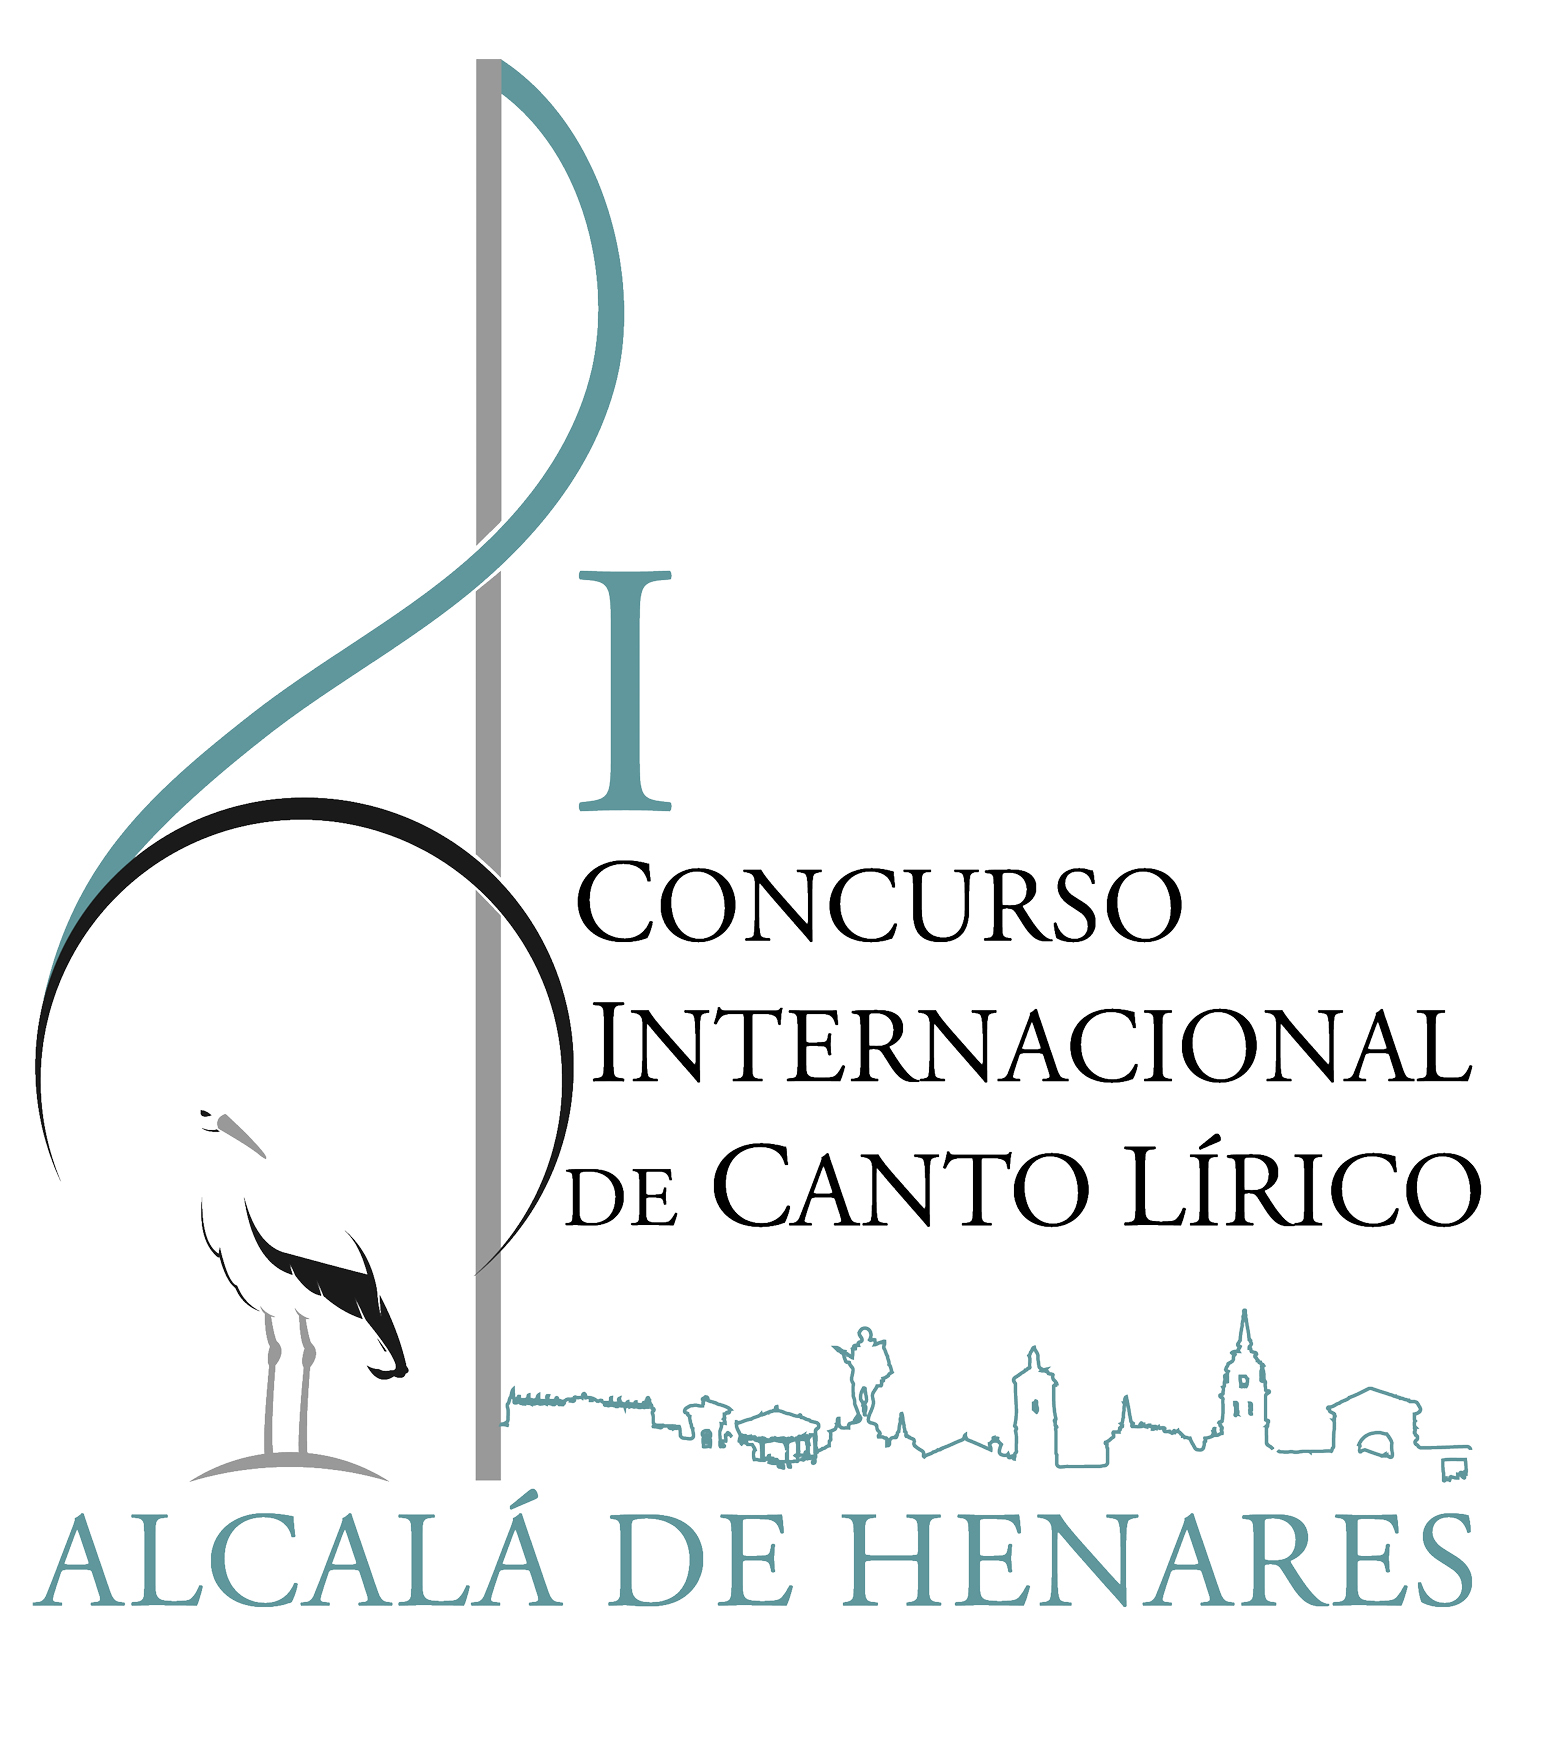 I Concurso Internacional de Canto Lírico Alcalá de Henares